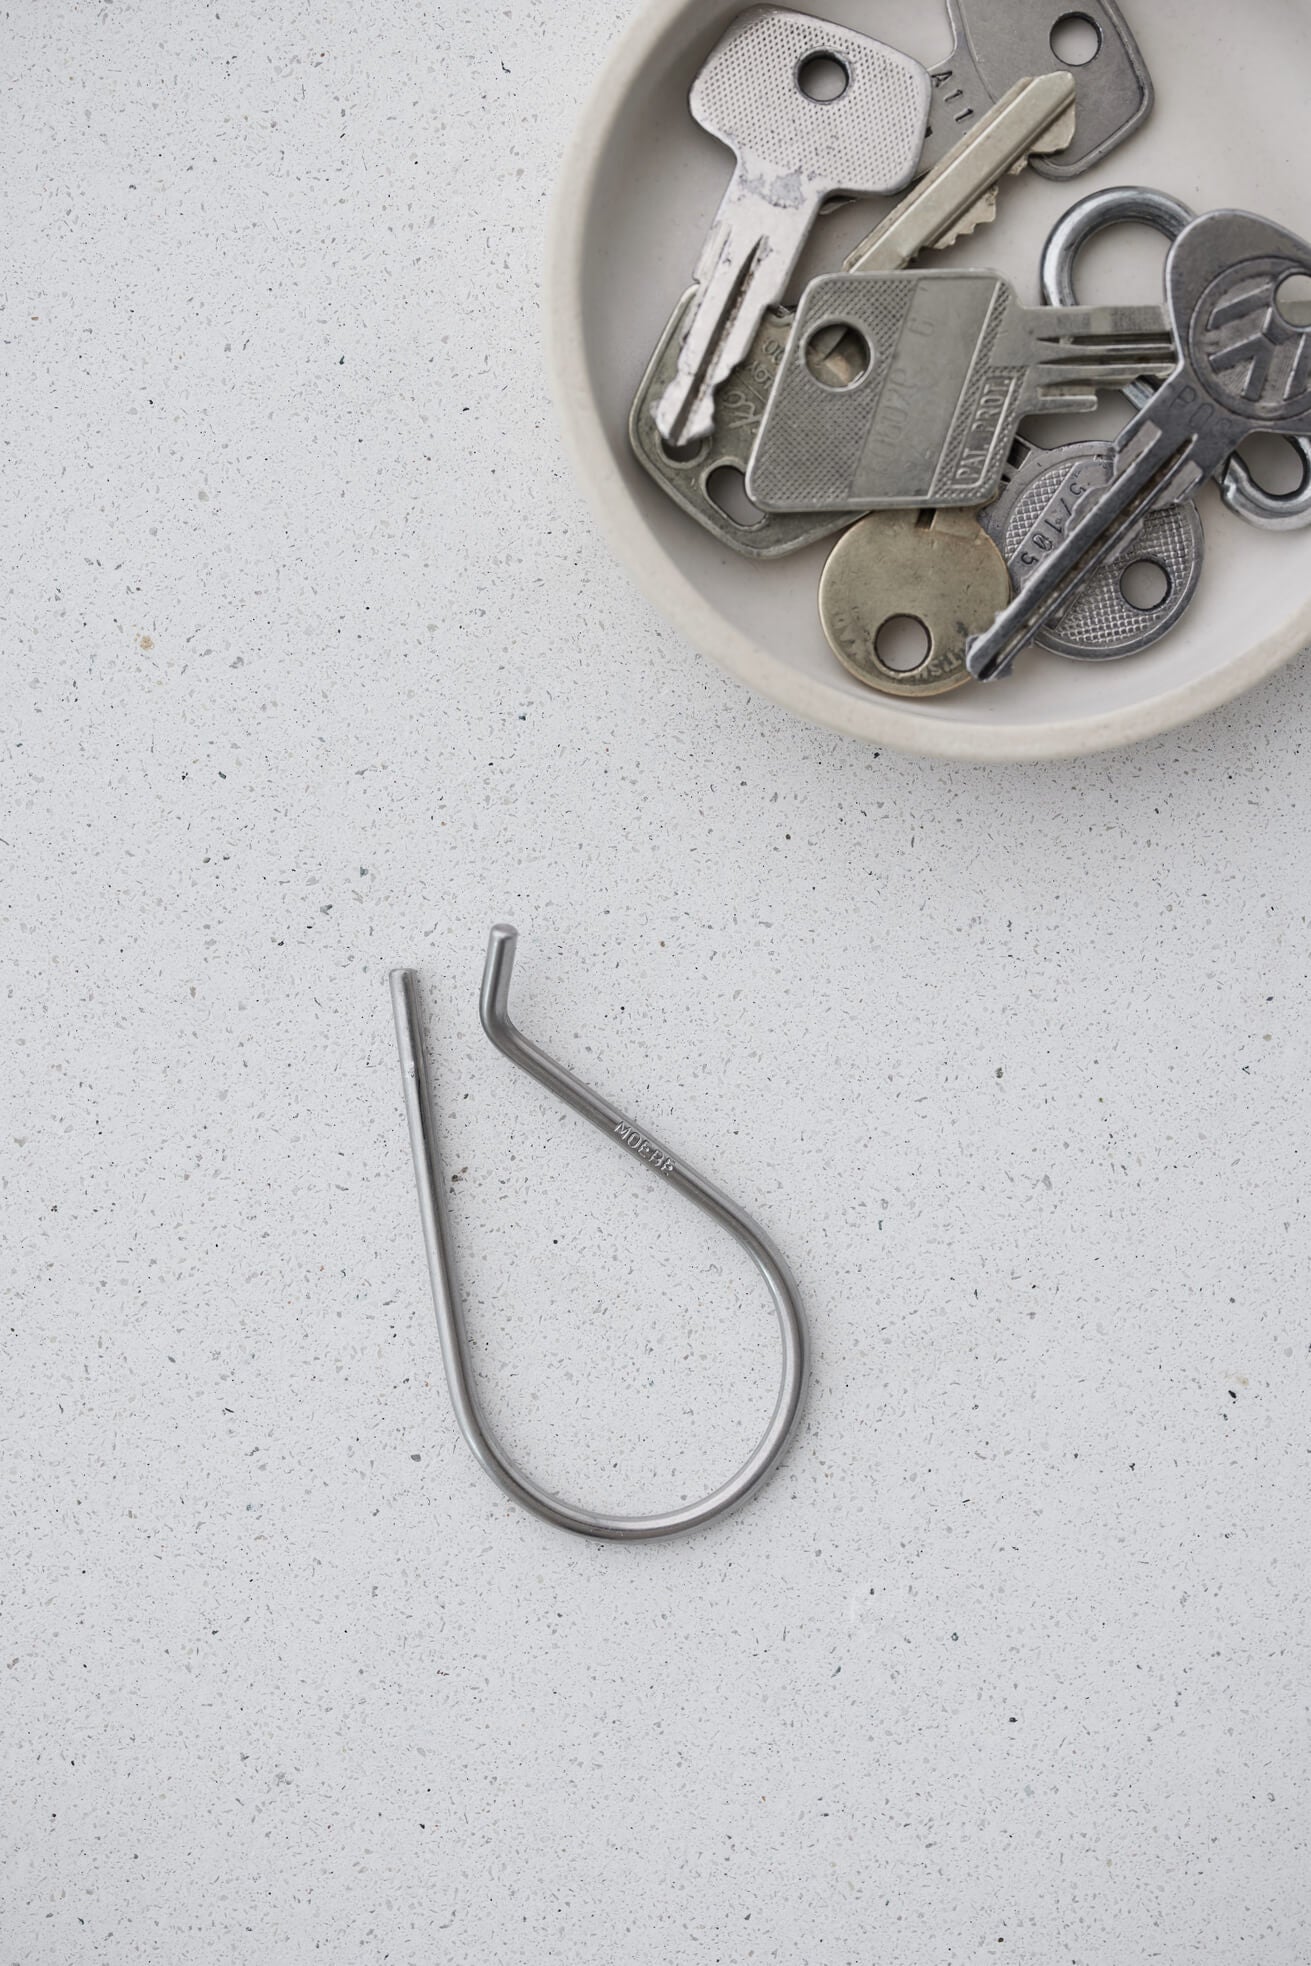 Key Ring | Stainless Steel | by Moebe - Lifestory